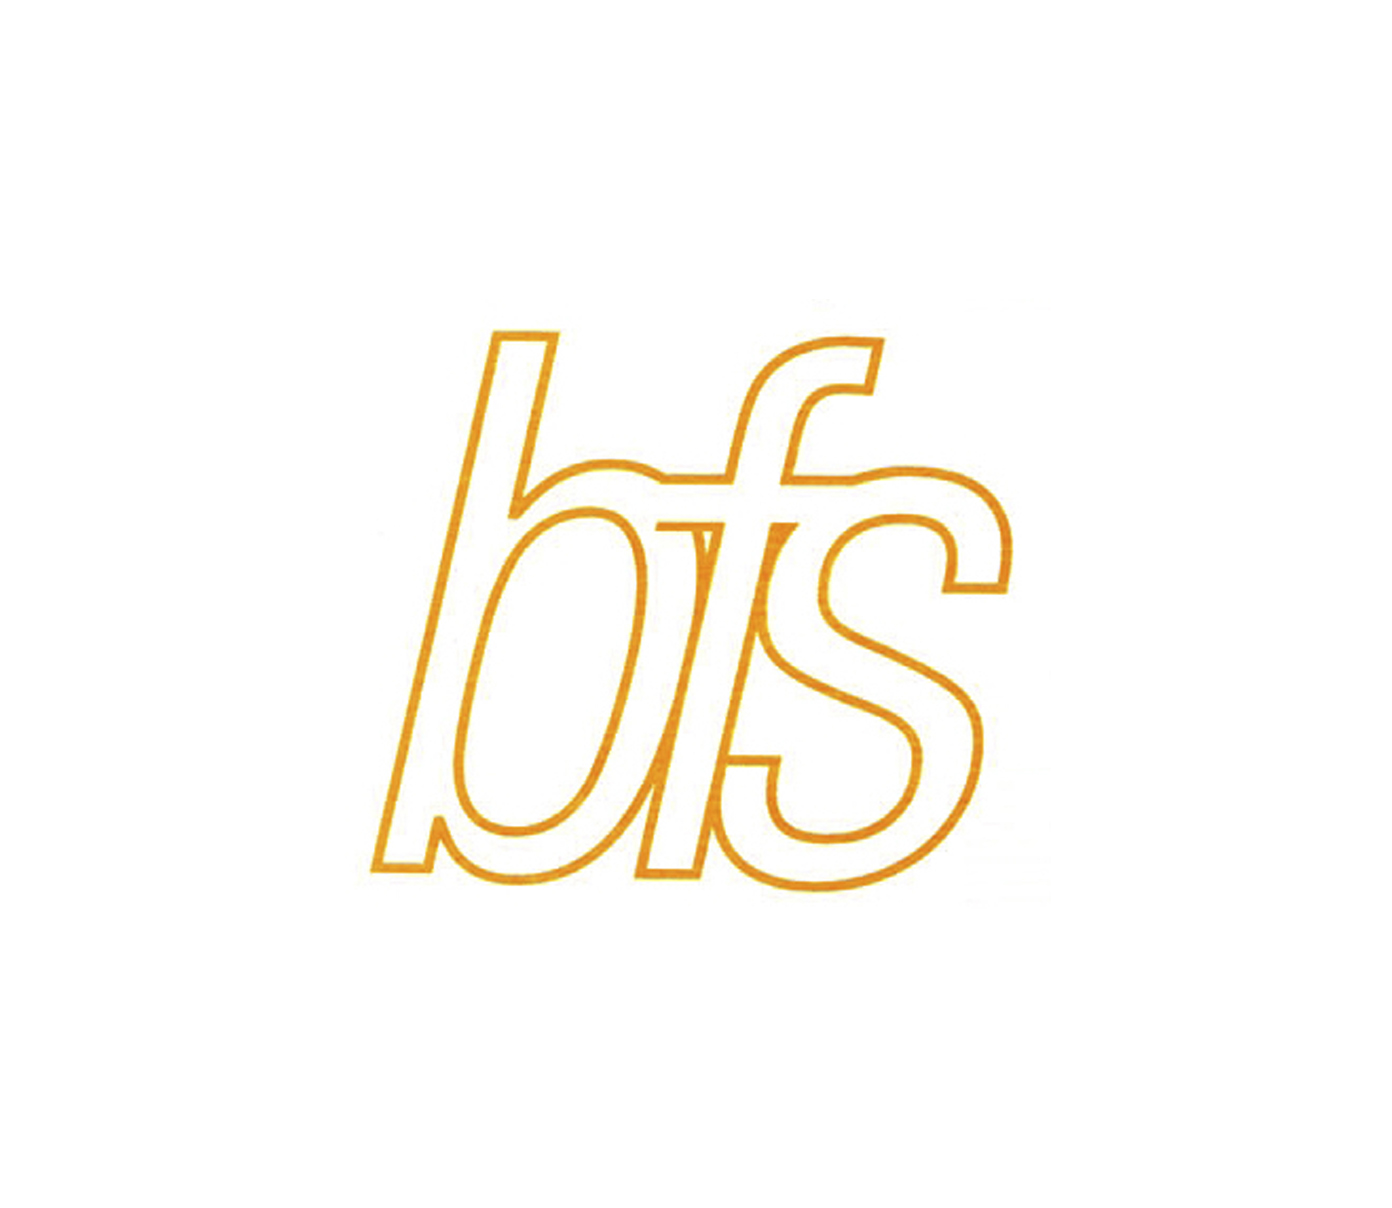 logo - bfs as Smart Object-1.jpg